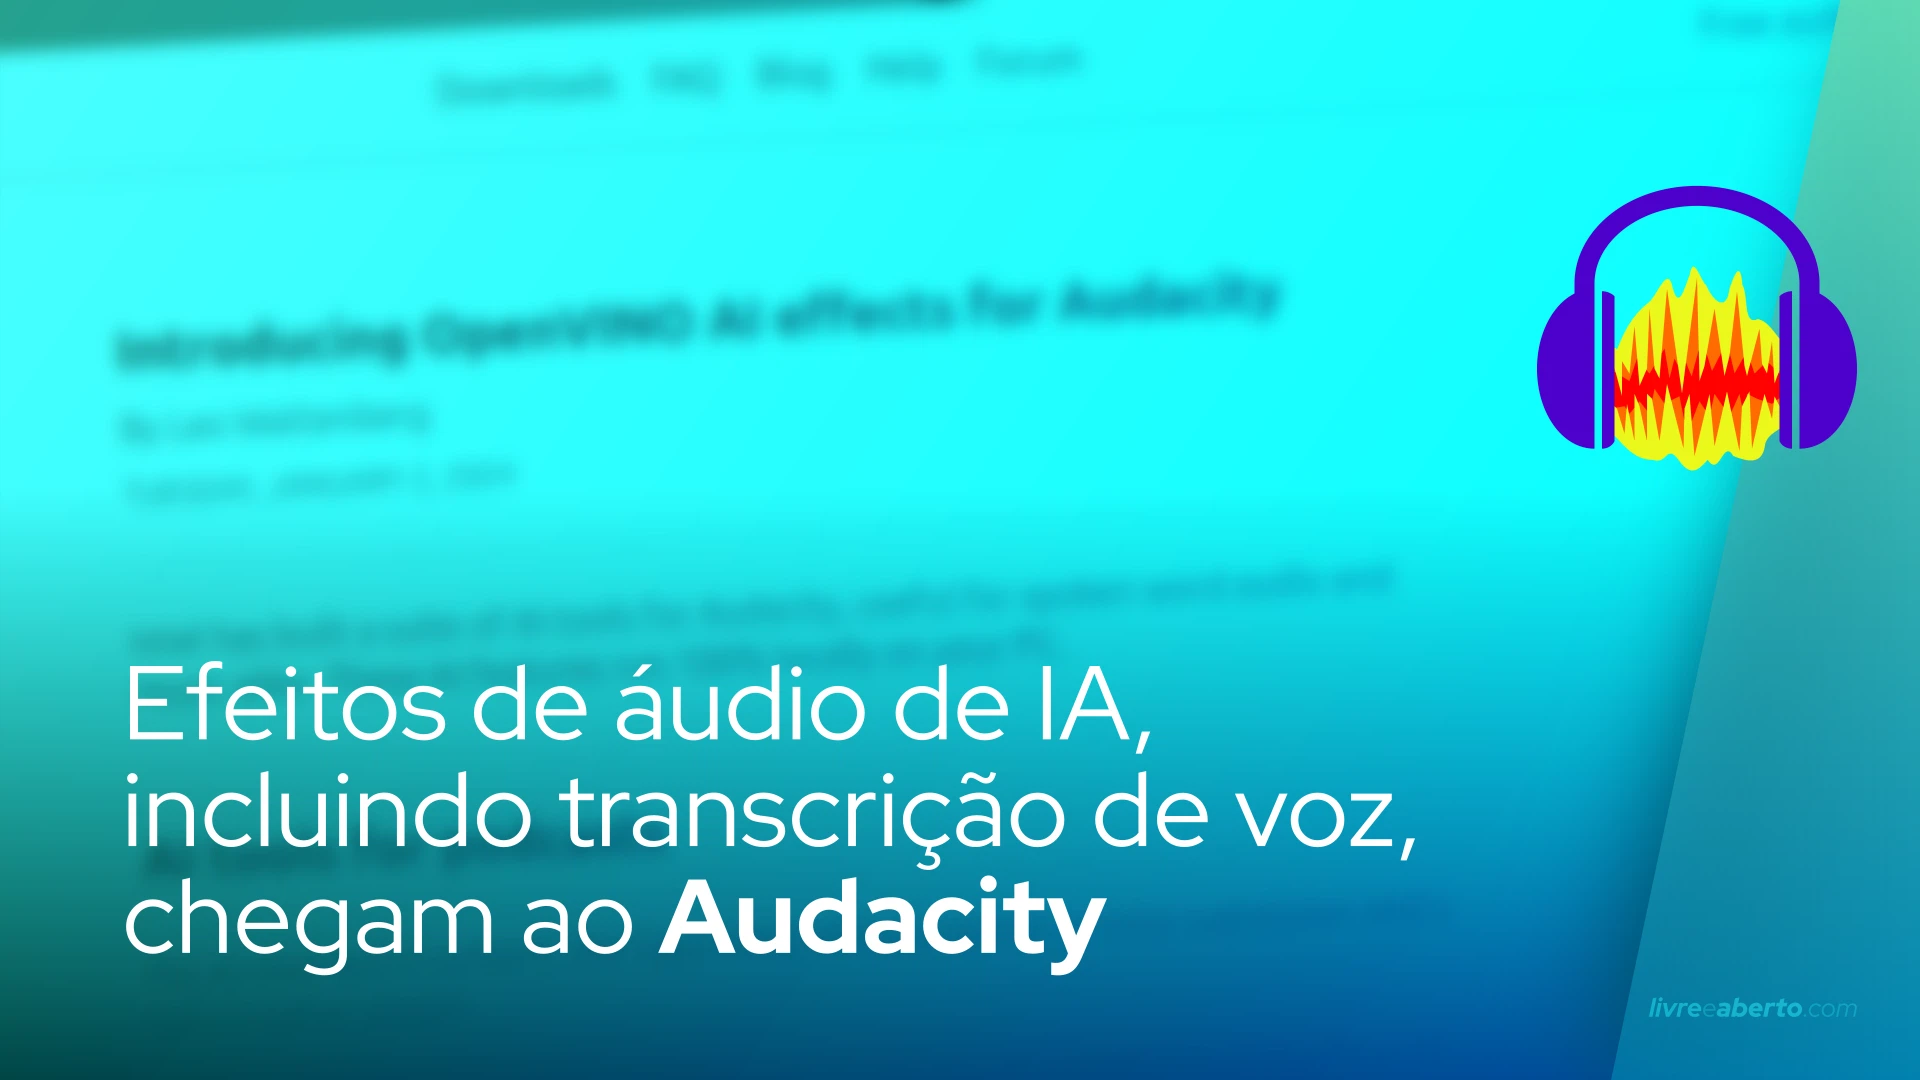 Efeitos de áudio de IA, incluindo transcrição de voz, chegam ao Audacity